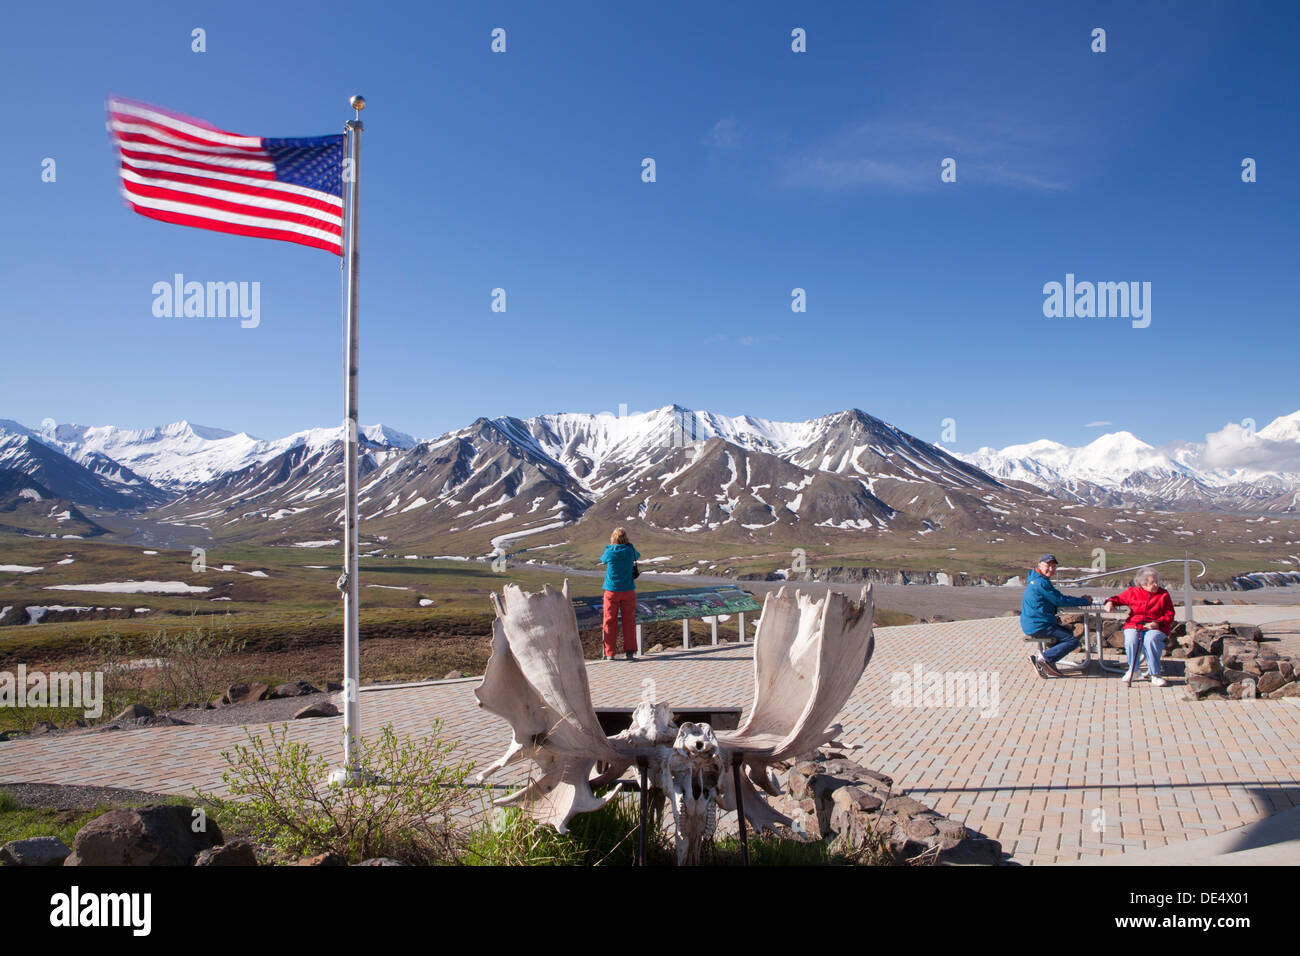 Vue sur le mont McKinley Denali ou d'Eielson Visitor Center, le Parc National Denali et préserver, Alaska, États-Unis d'Amérique Banque D'Images